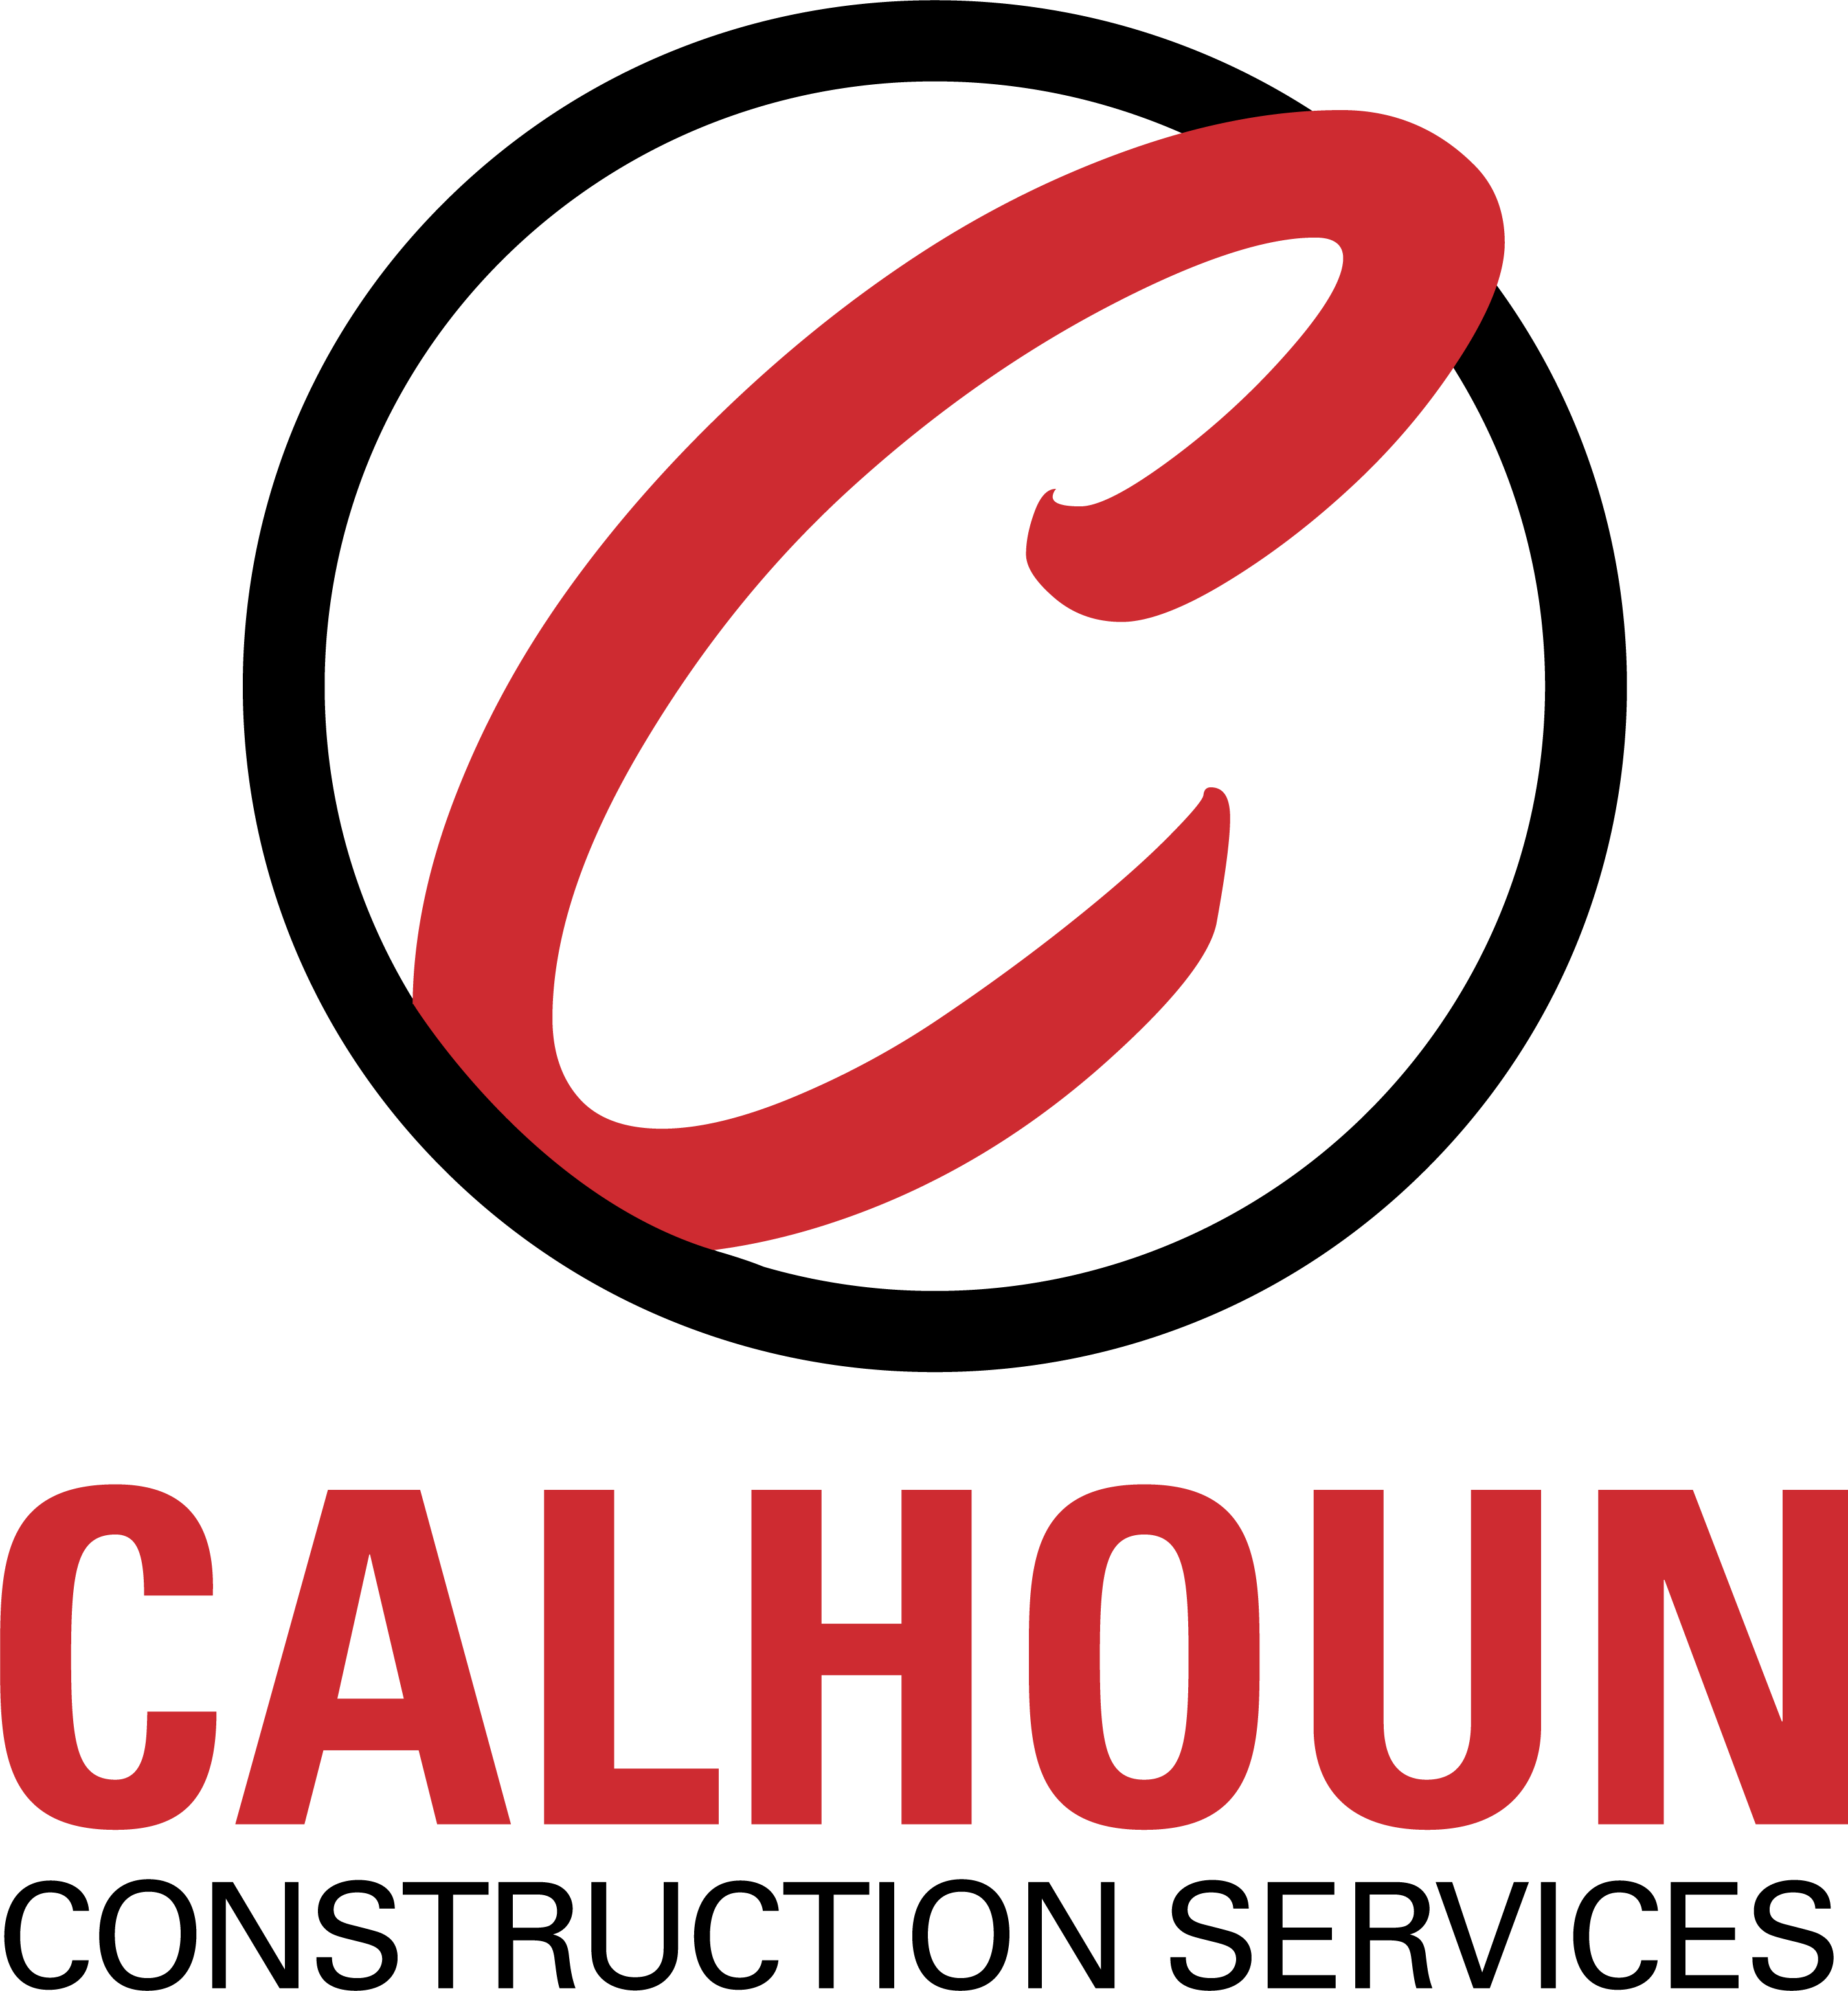 Construction Services Logo - Calhoun Construction | Calhoun Construction Services